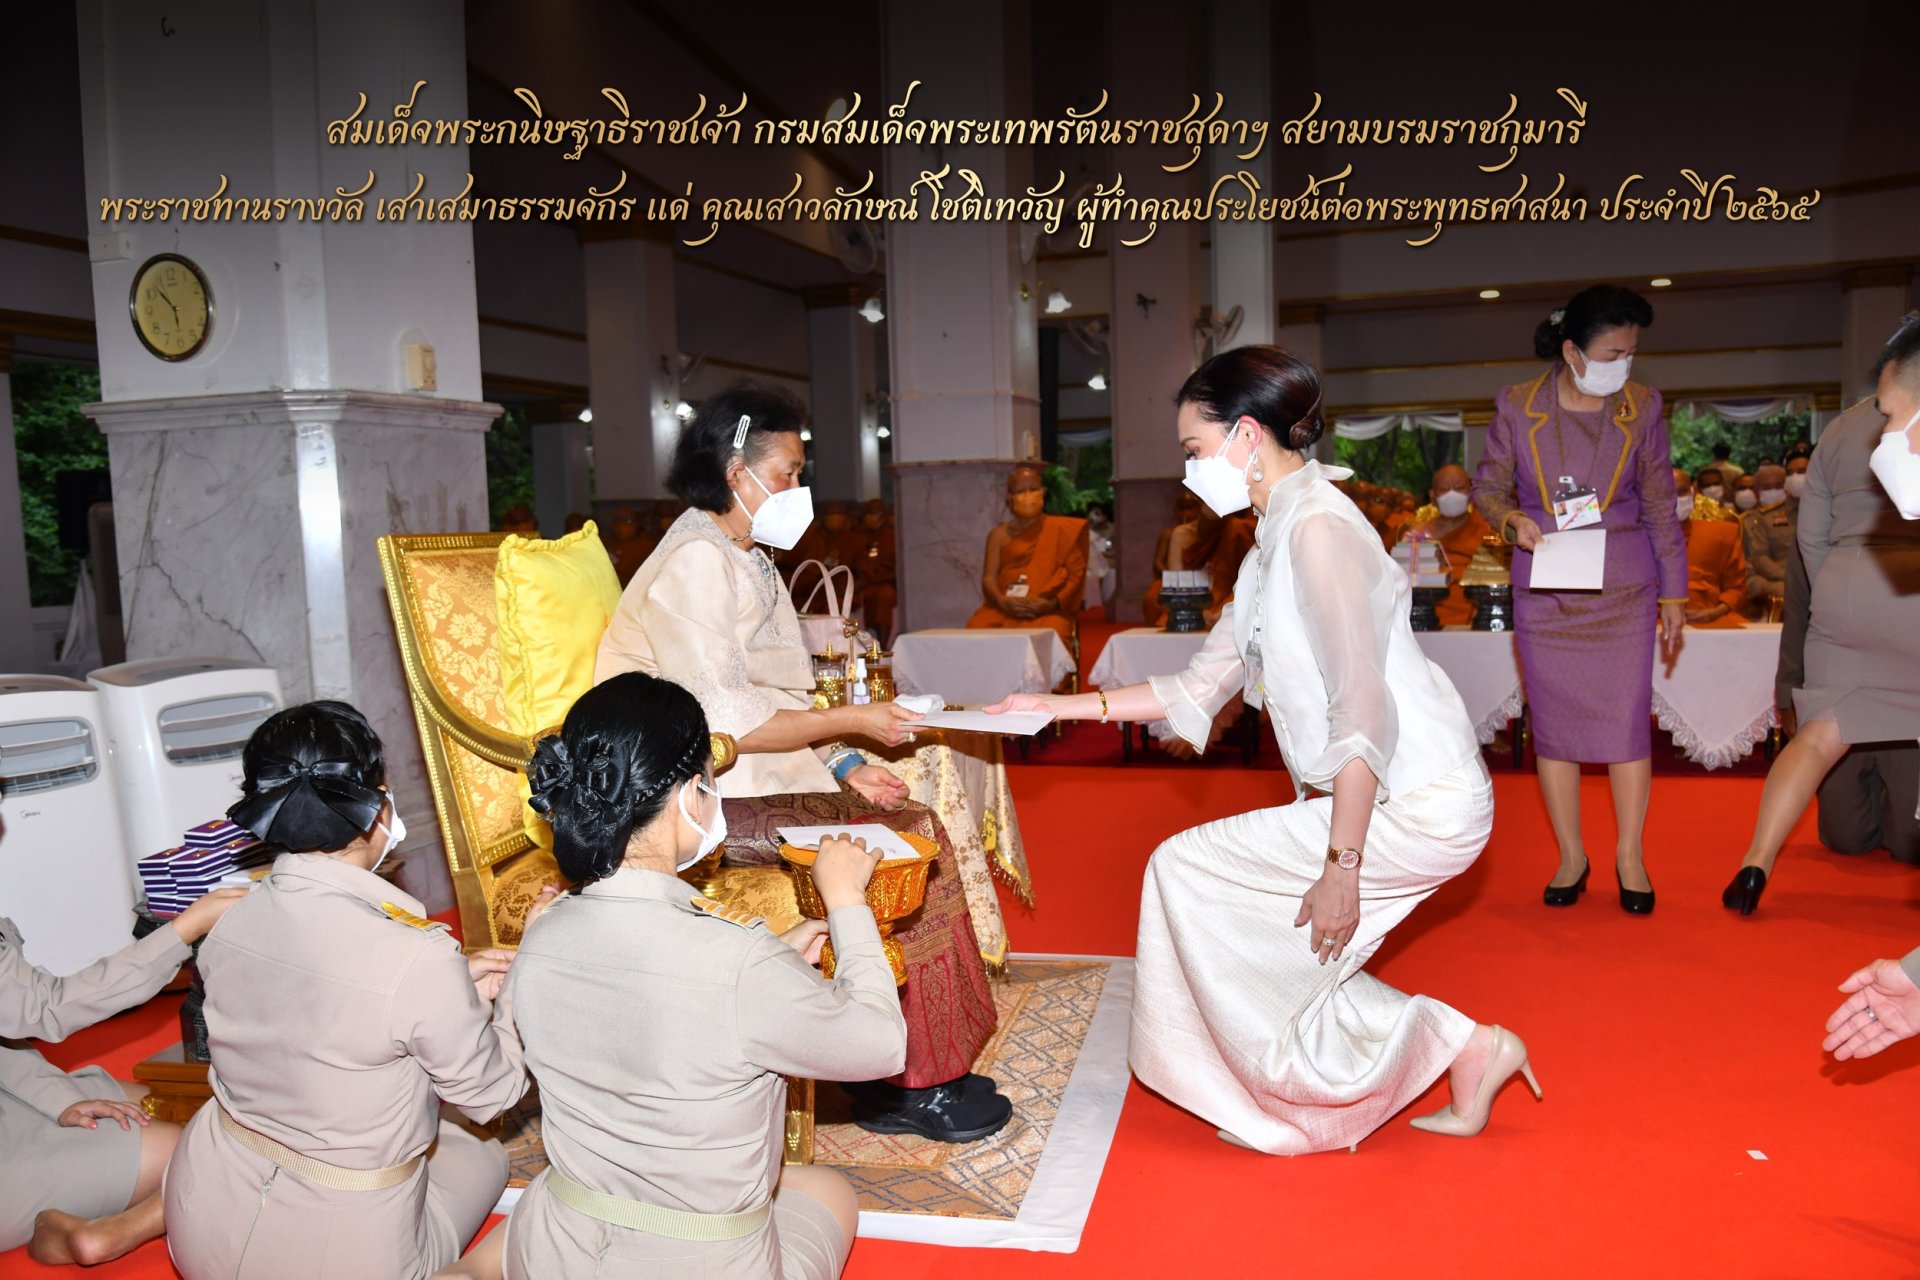 Her Royal Highness Princess Maha Chakri Sirindhorn graciously presented the Dhammachakra Sema Award